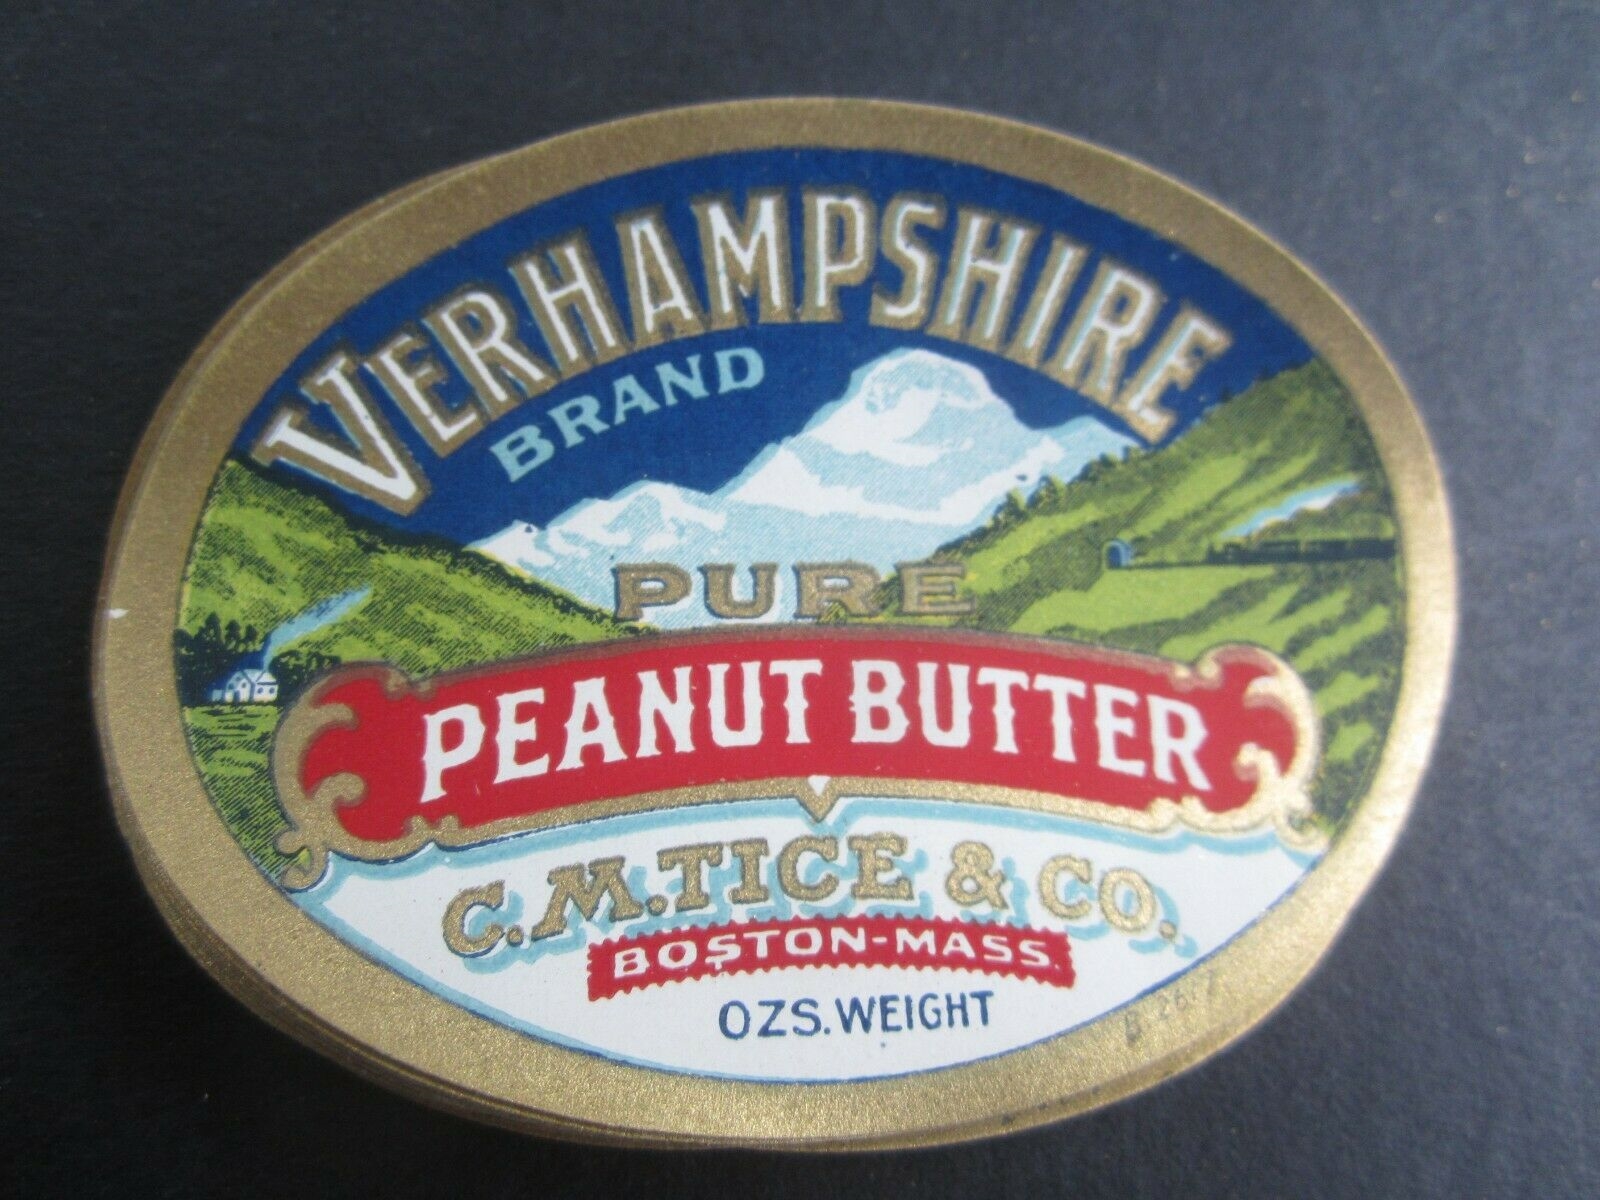  Lot of 25 Old Vintage - VERHAMPSHIRE Peanut Bu...